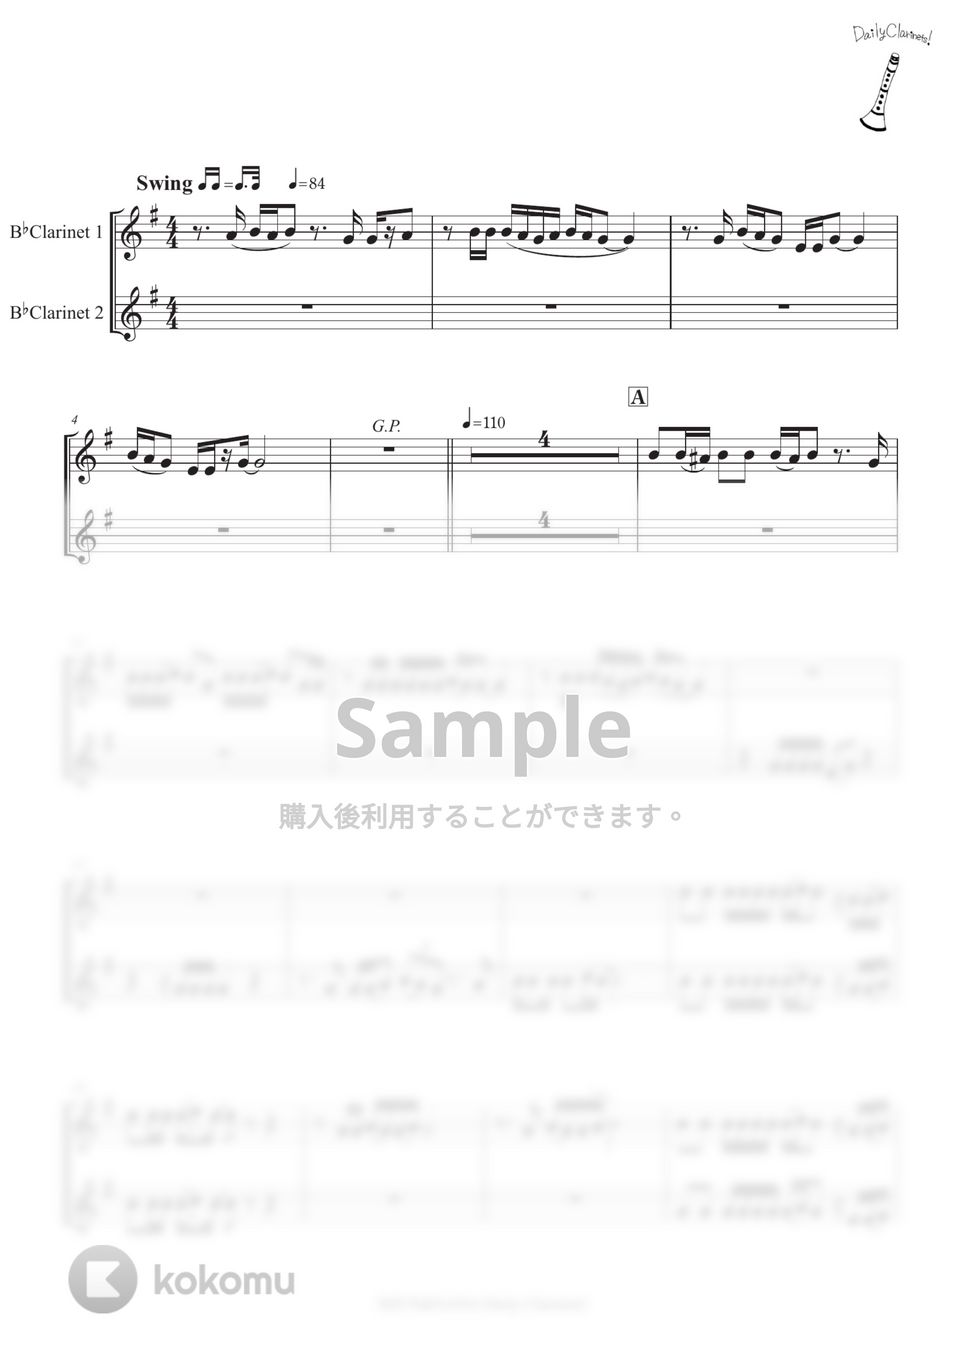 スズキナオト（オレンジスパイニクラブ） - キンモクセイ (クラリネット二重奏) by SHUN&NANA Daily Clarinets!